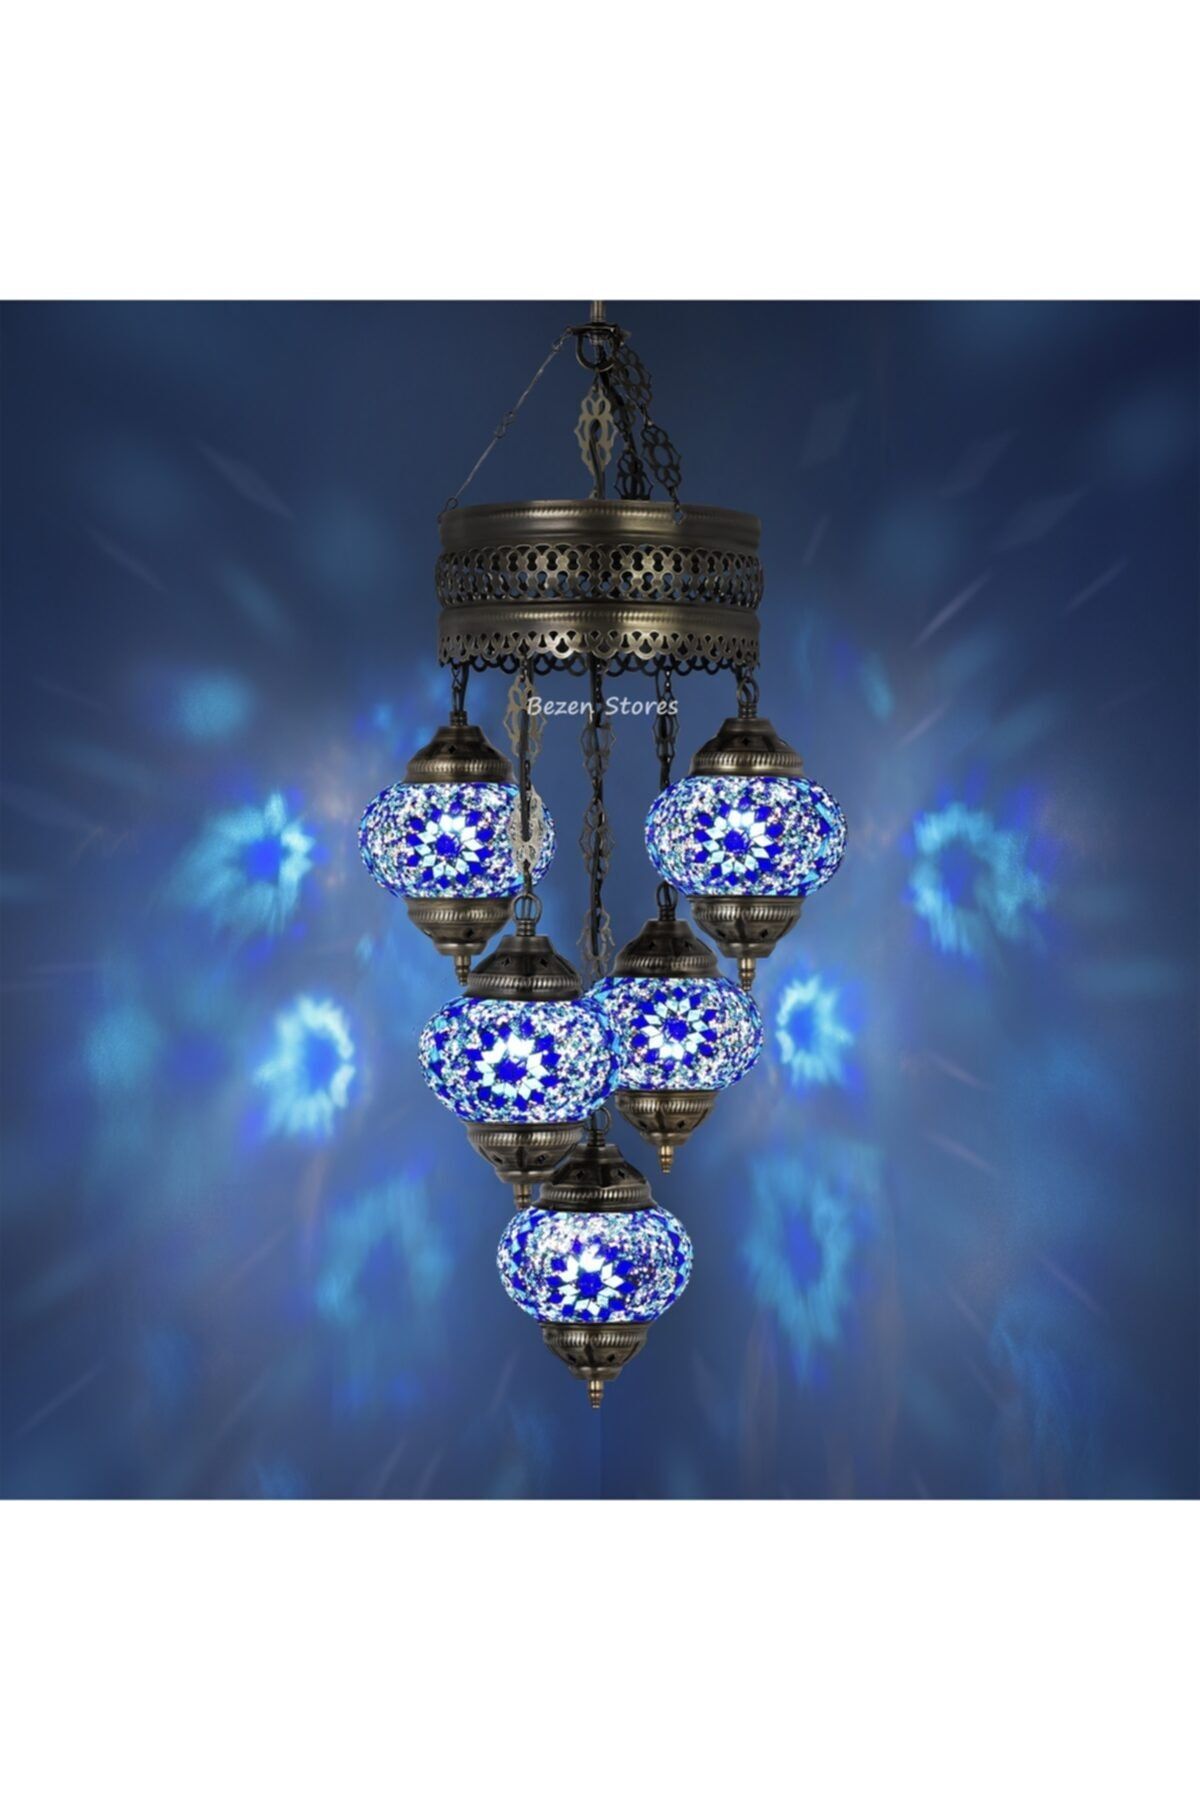 bezenstore 5 Küreli Mozaik Avize Otantik Türk Lambası, El Yapımı Mozaik Asma Tavan Avizesi(mavi Küp)